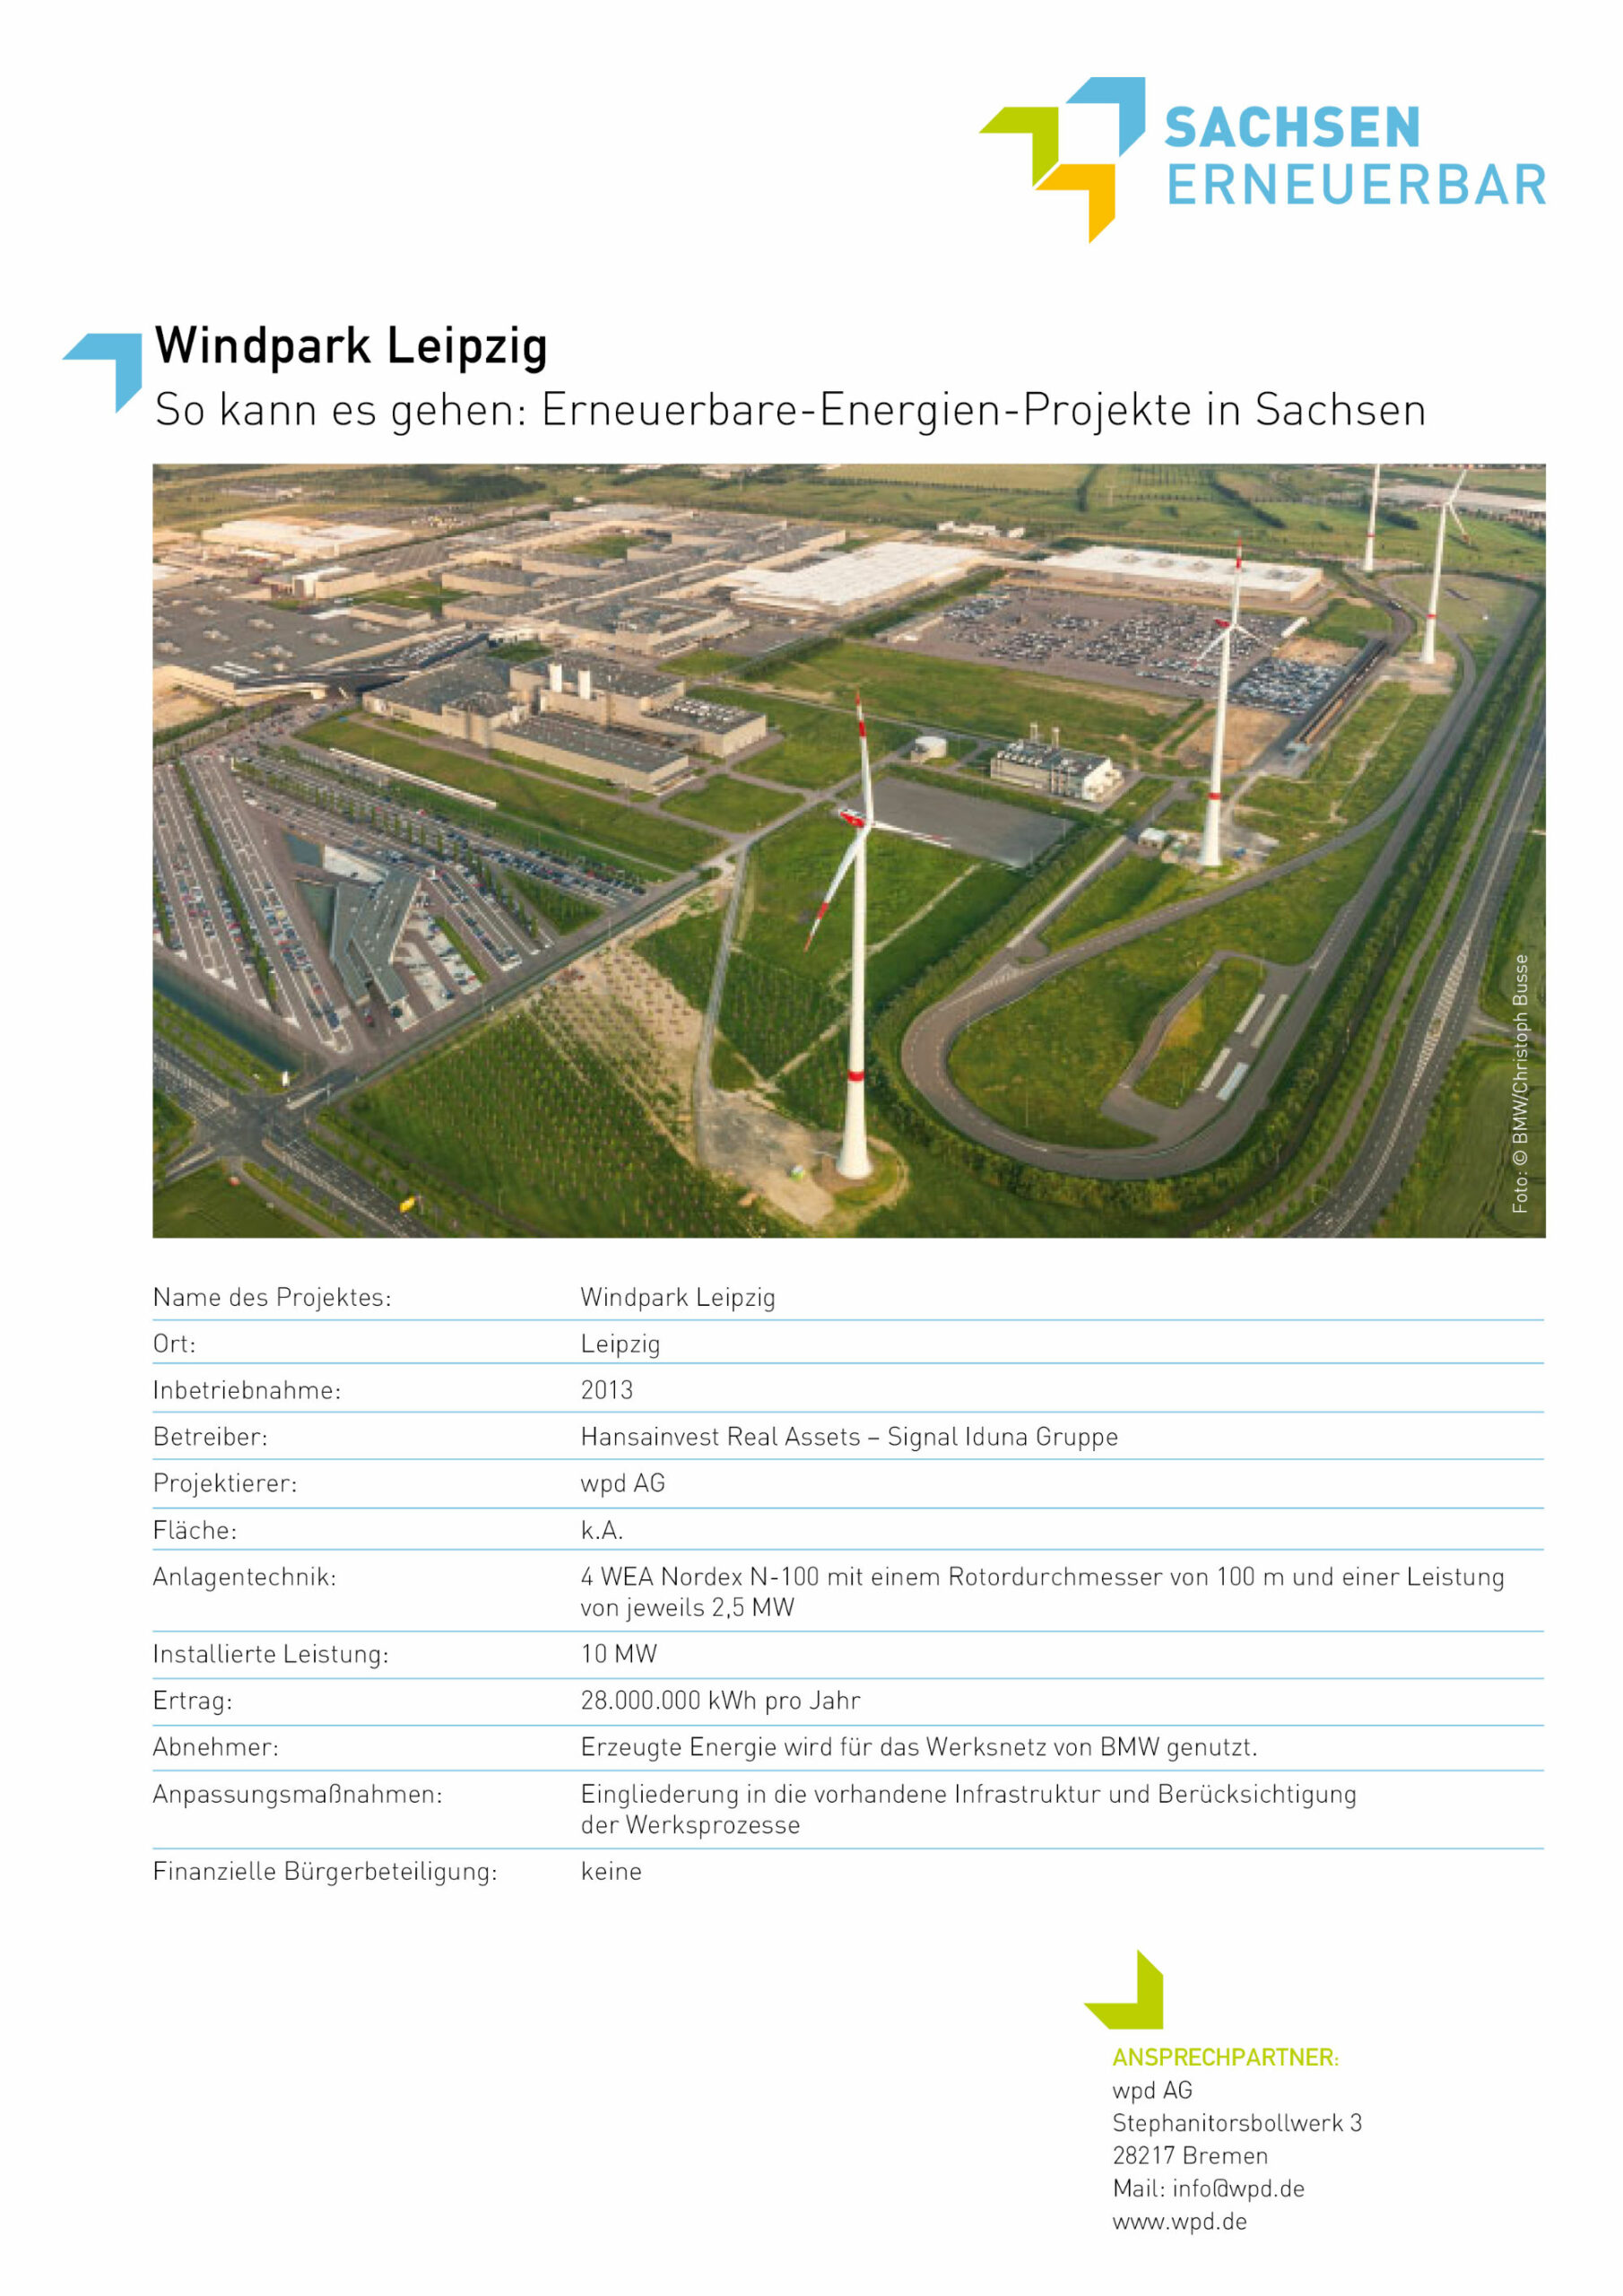 Beispiele für Erneuerbare-Energien-Projekte - Windpark Leipzig